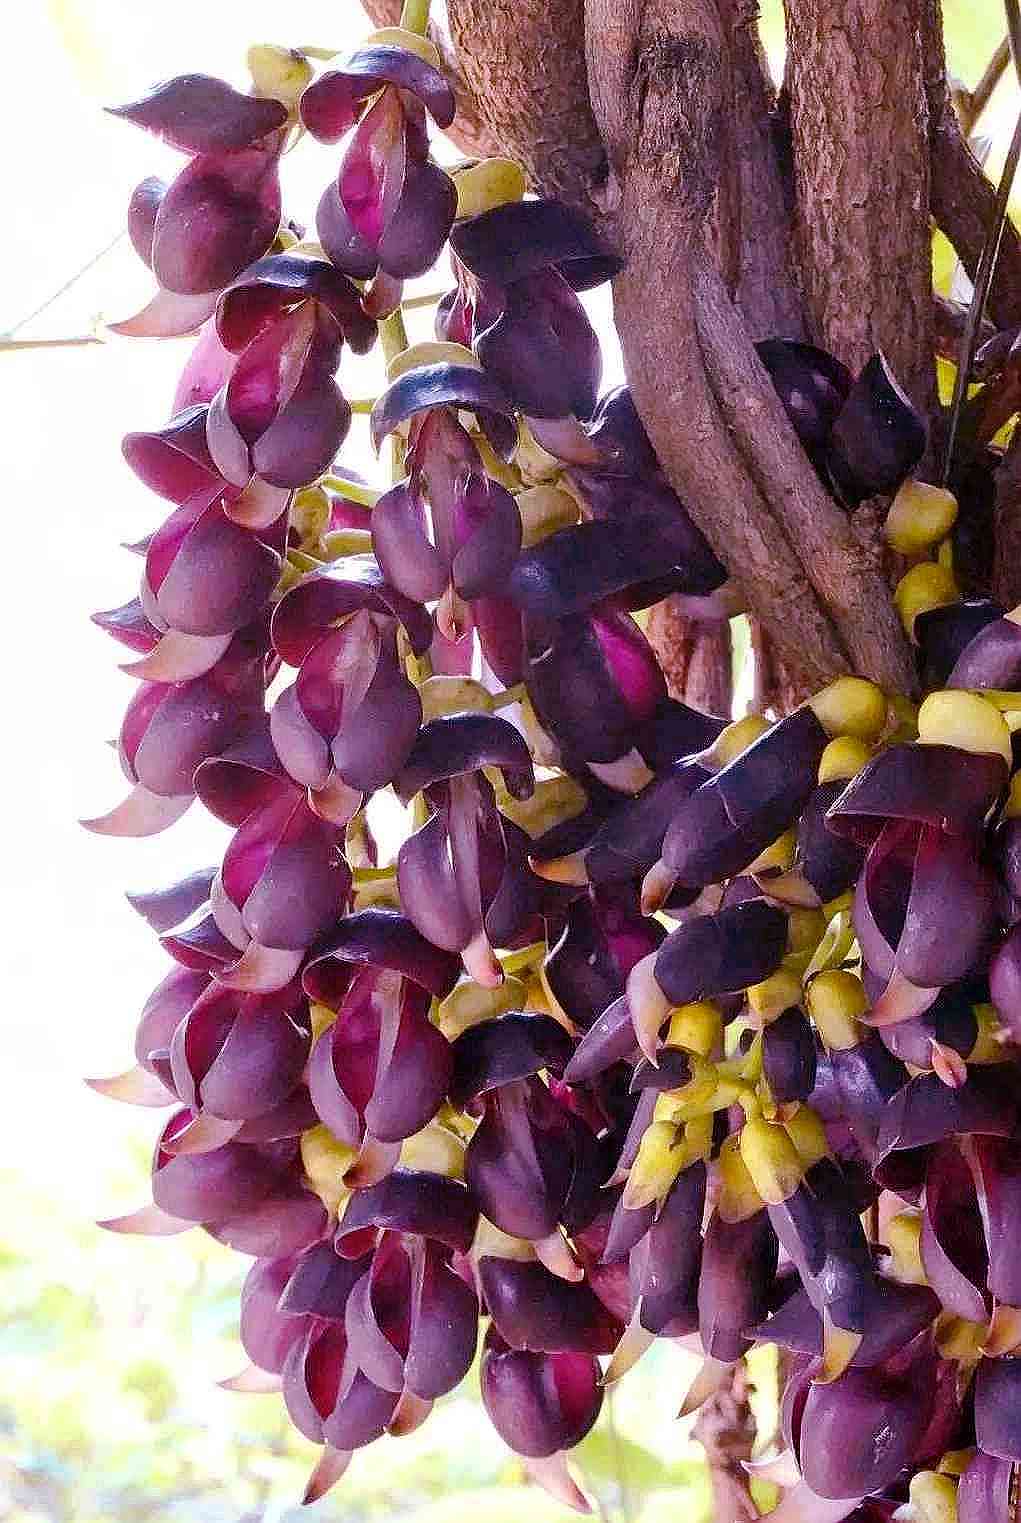 常春油麻藤上一朵朵深紫色的花儿，密密麻麻的挂在枝上，如同小雀在开会。图片均为长沙晚报全媒体记者 贺文兵 摄